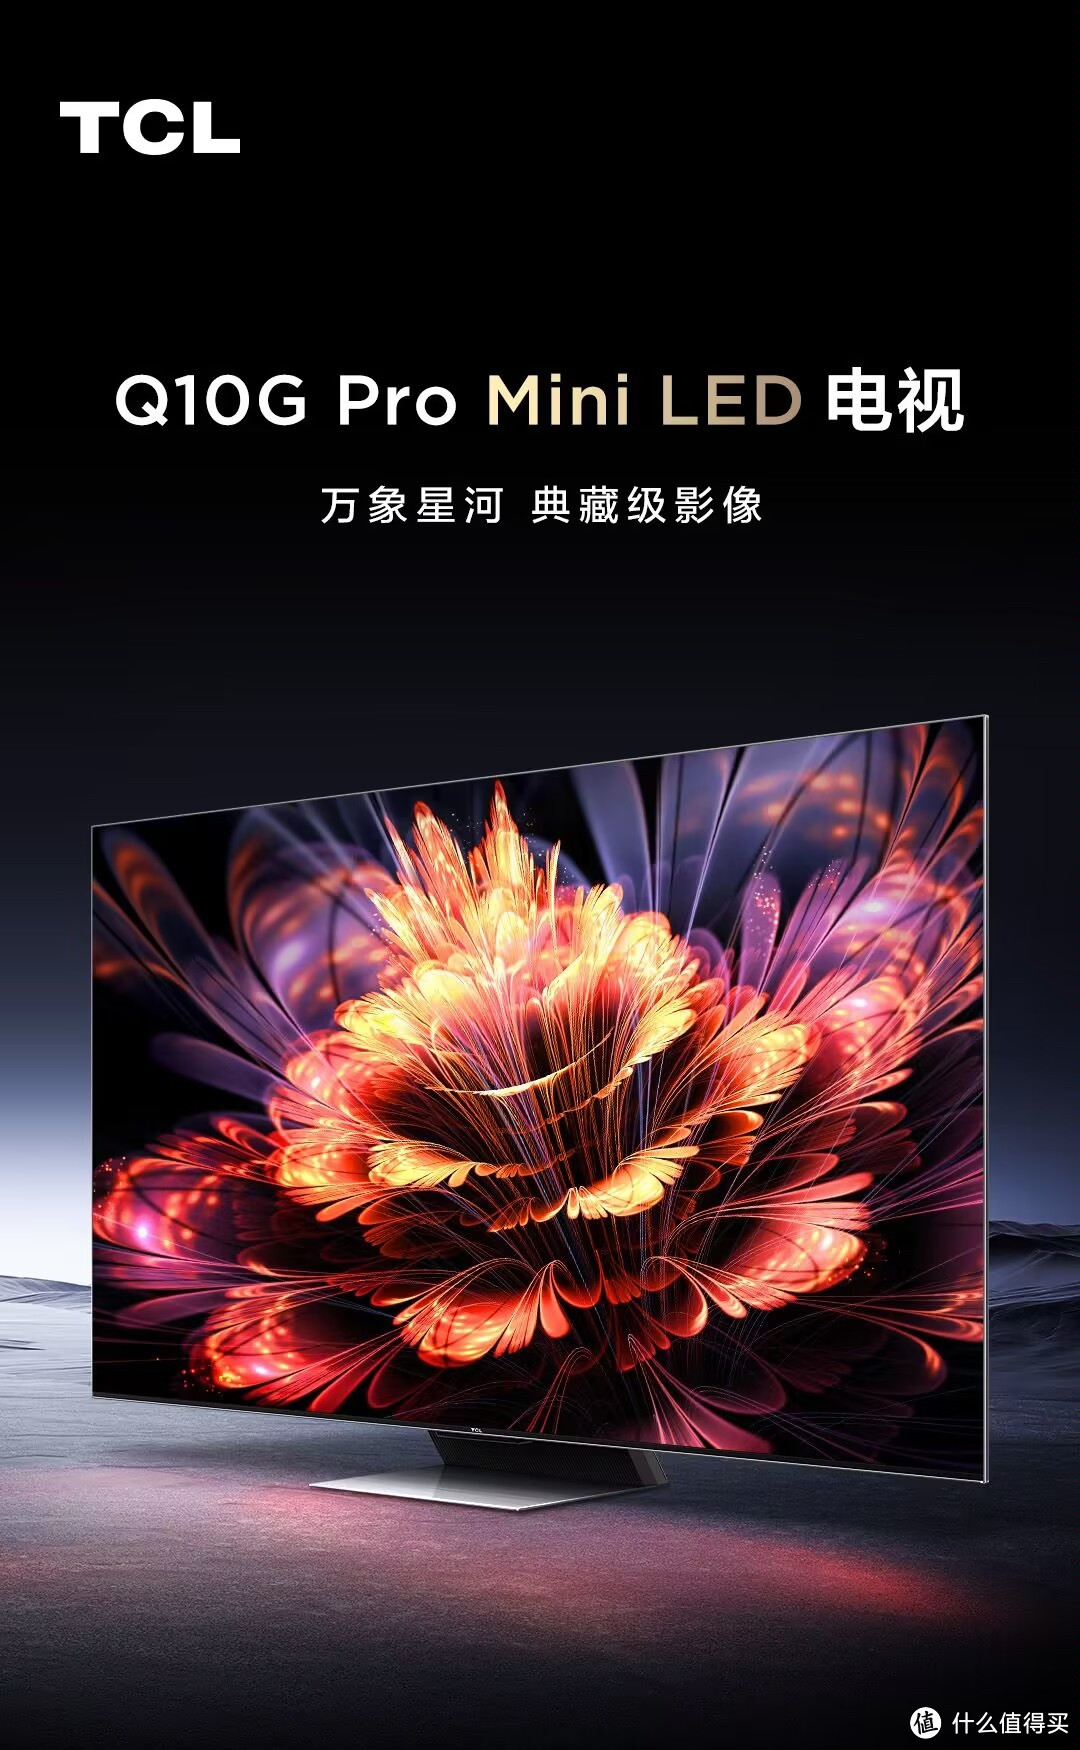 销量之王——TCL Q10G Pro